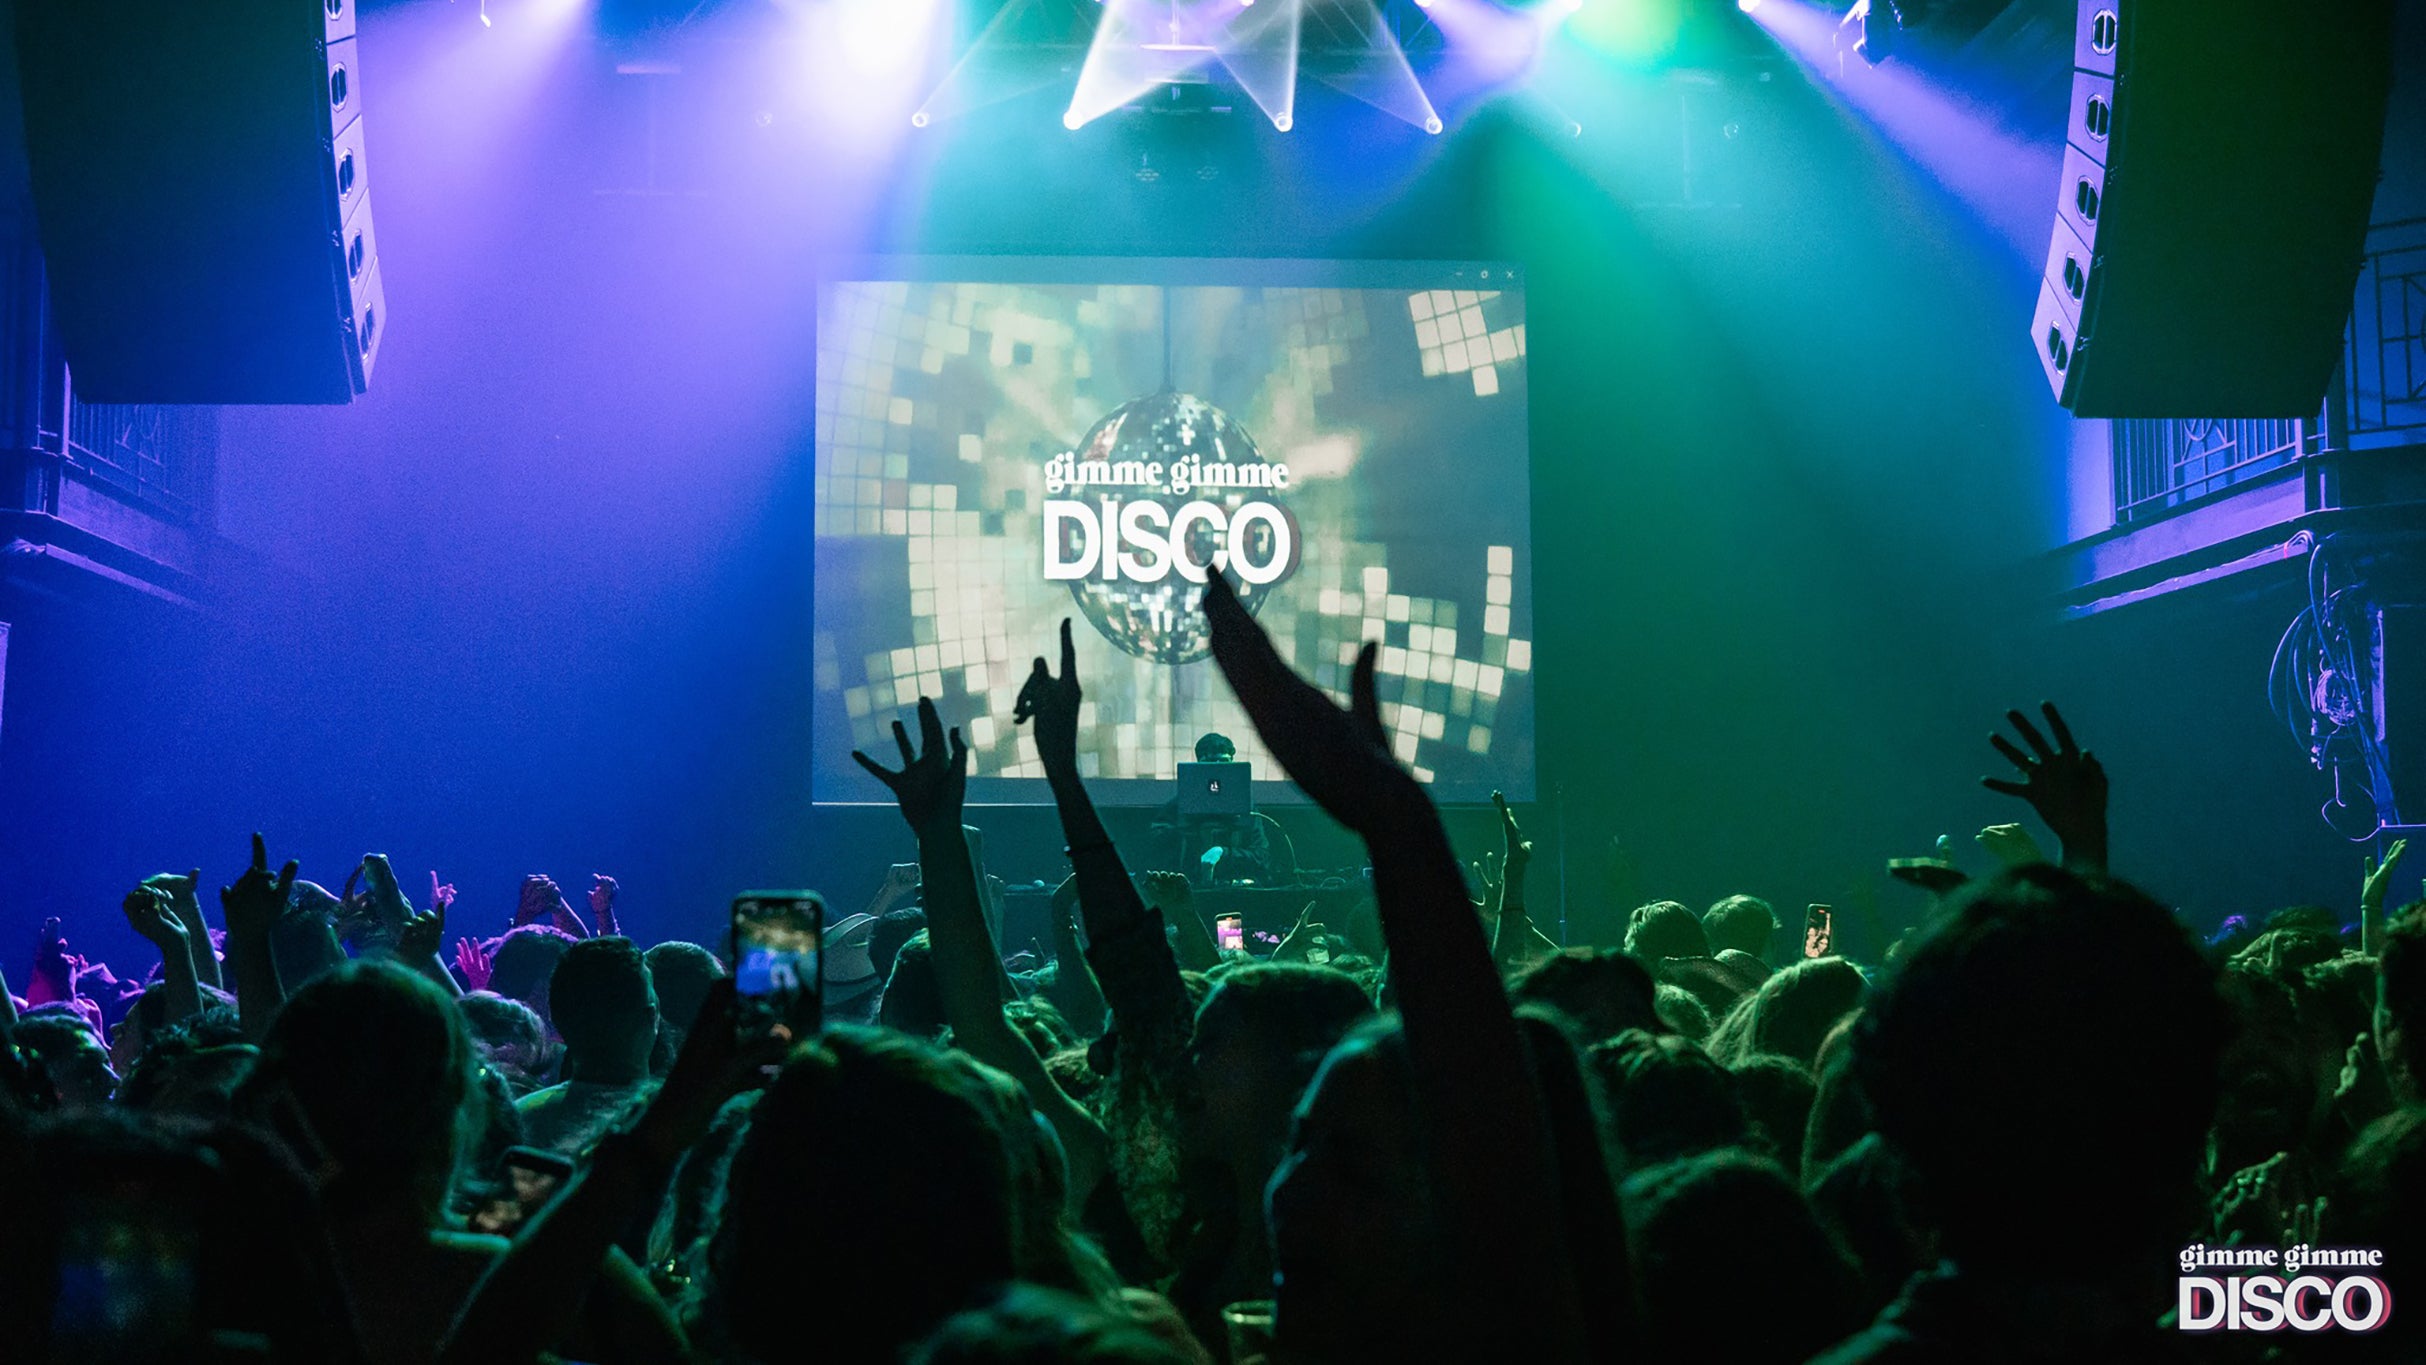 Gimme Gimme Disco- a Disco Dance Party Inspired By Abba - Colorado Springs, CO 80909